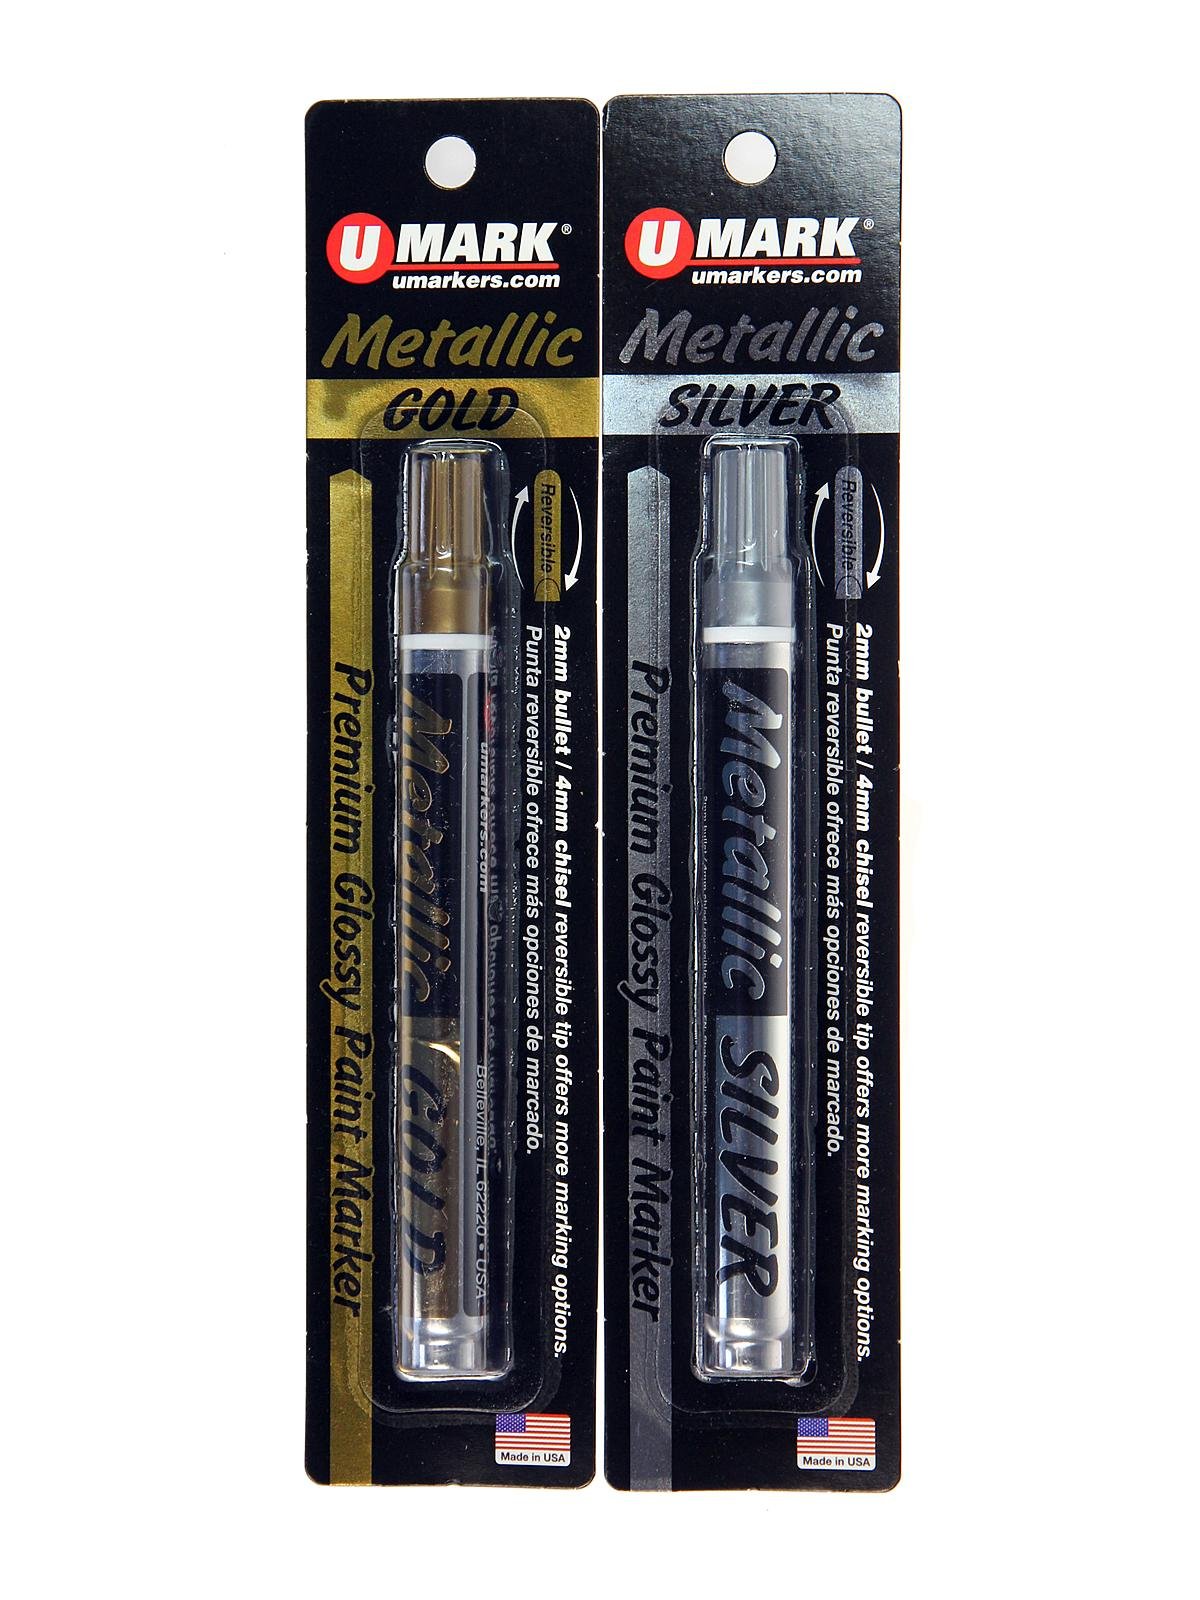 U-Mark - Premium Metallic Glossy Paint Markers